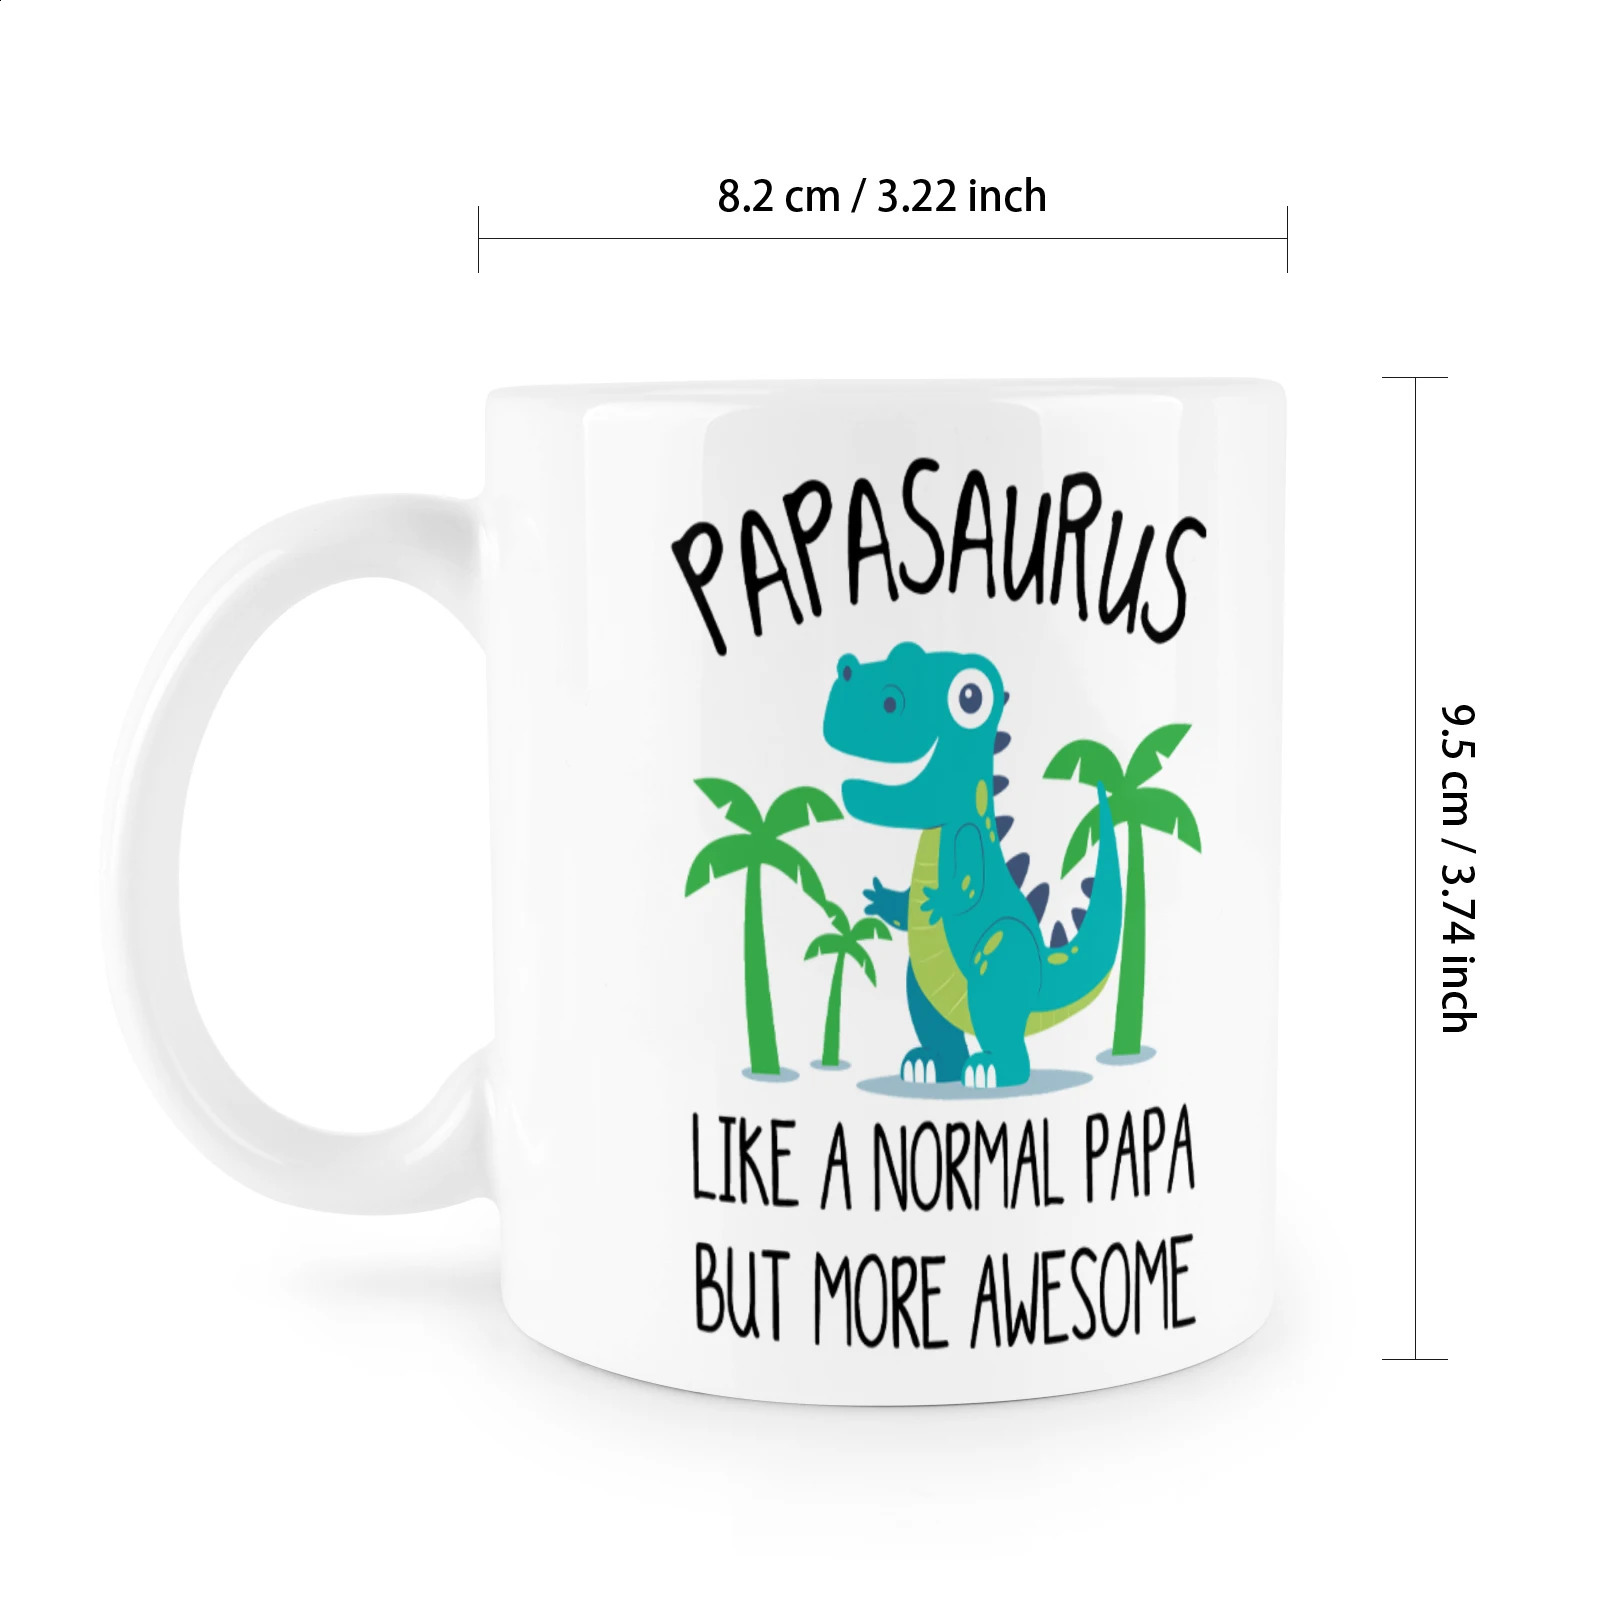 カスタムかわいいアライグマカップ普通のパパのようなパパサウルスですが、より素晴らしい11オンスセラミックマグミルクティードリンクウェアGIF 240407